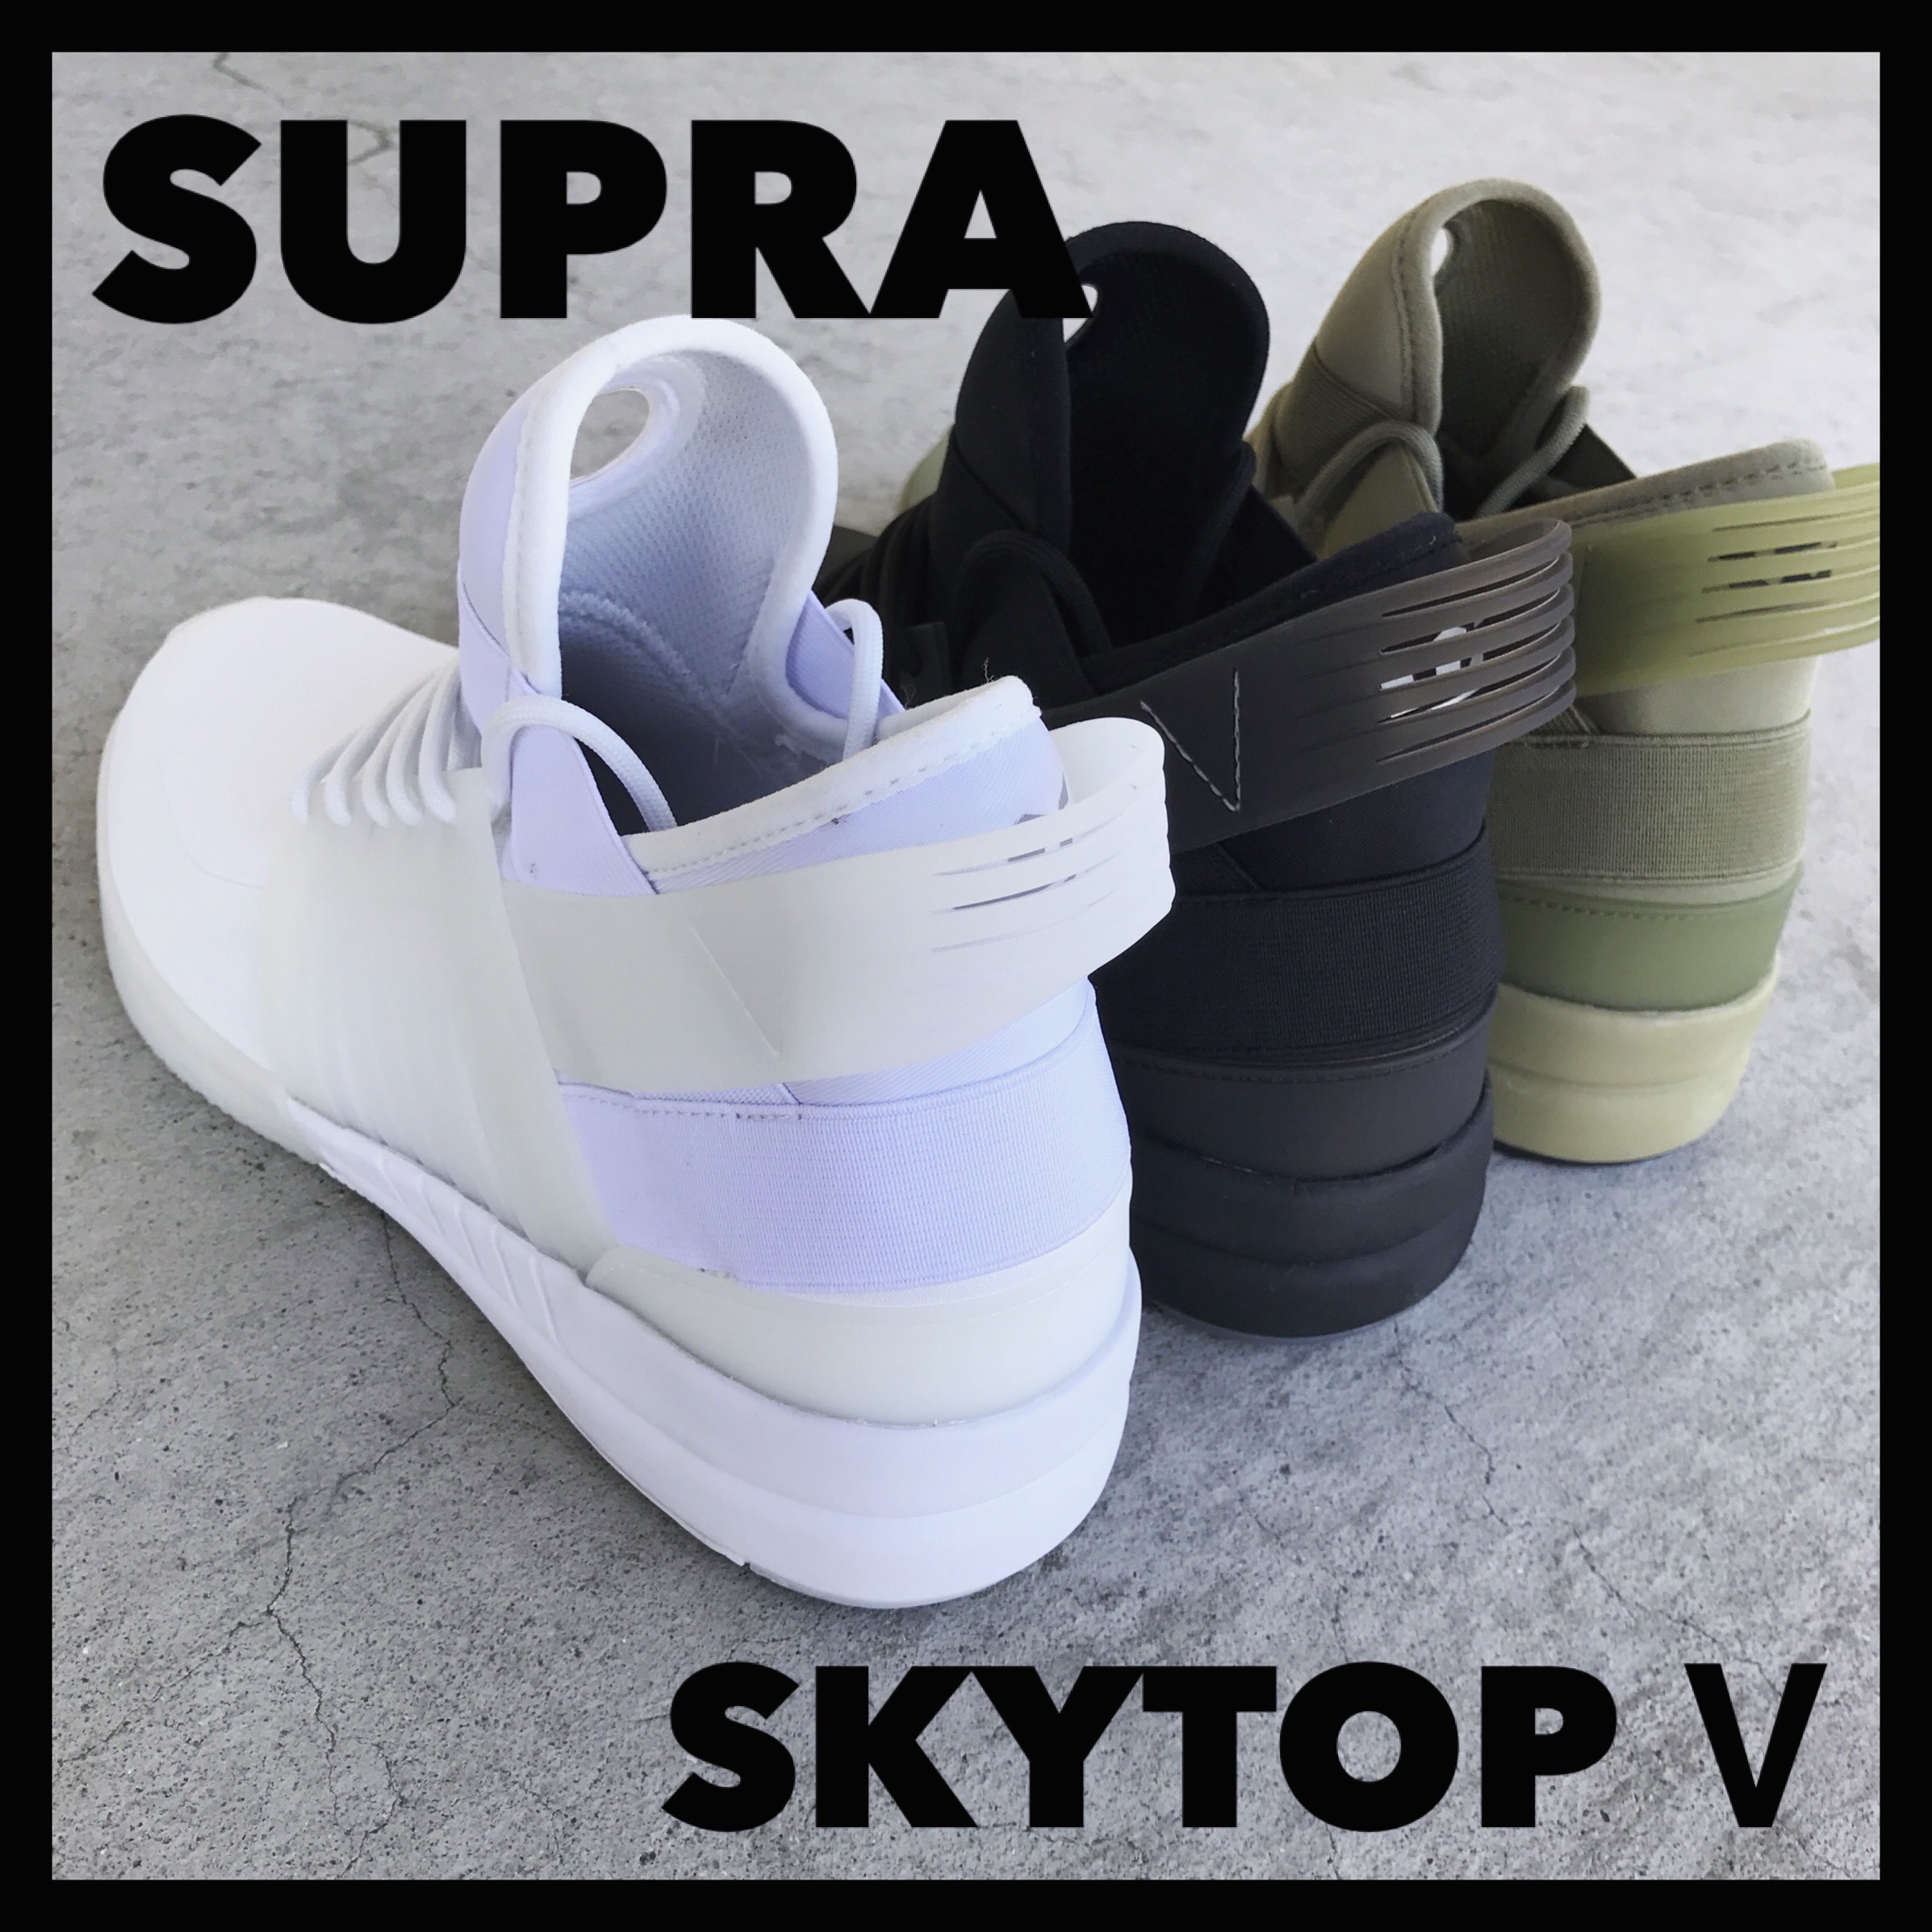 ハイファッション&ハイパフォーマンスをテーマとしたSUPRA SKYTOP V(5 